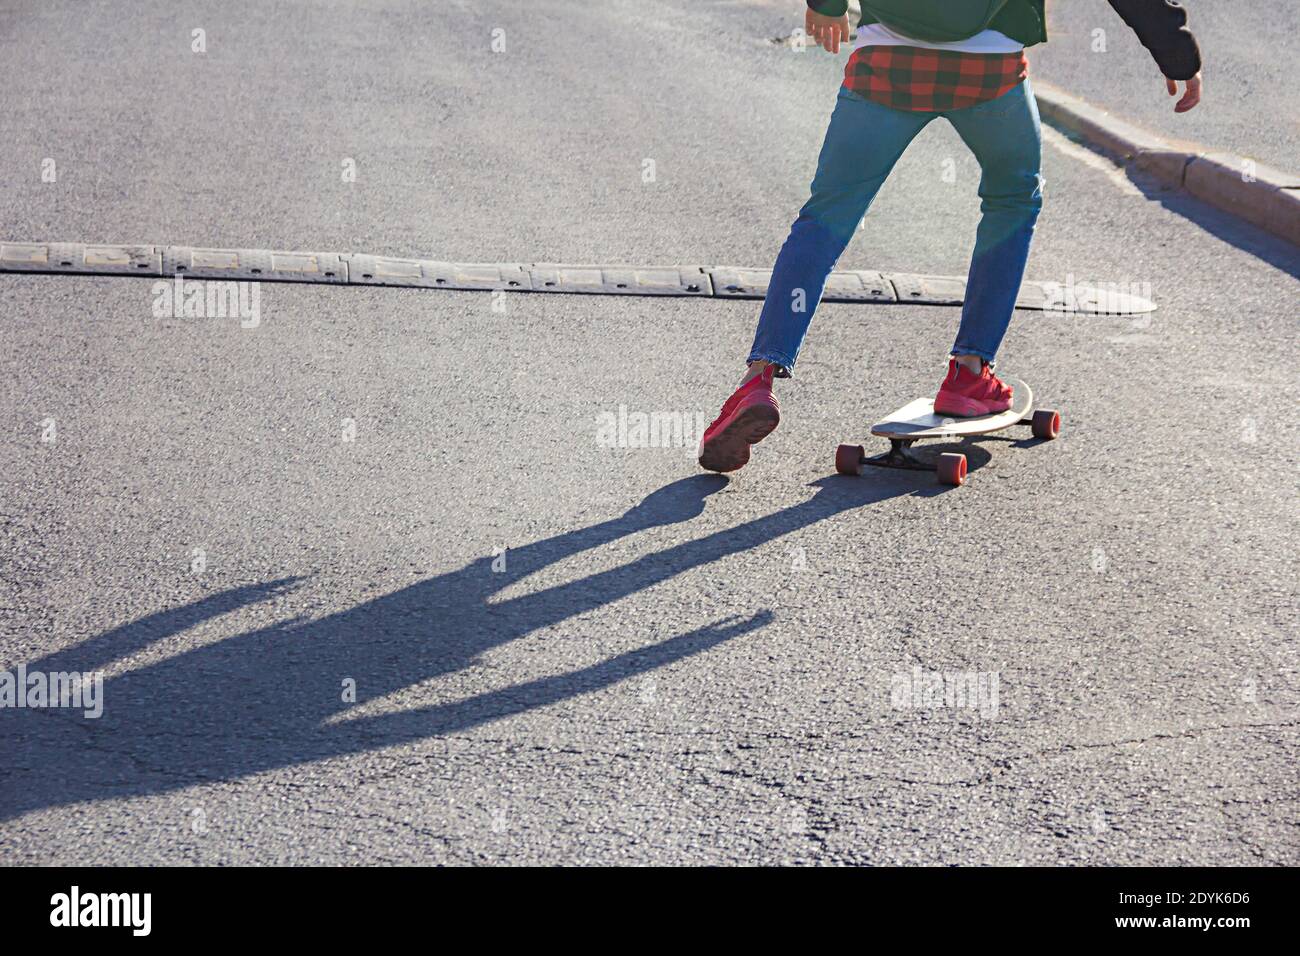 Vue sur les jambes d'un jeune skateboarder à bord d'un skate à l'approche de la bosse de vitesse sur une route urbaine Banque D'Images